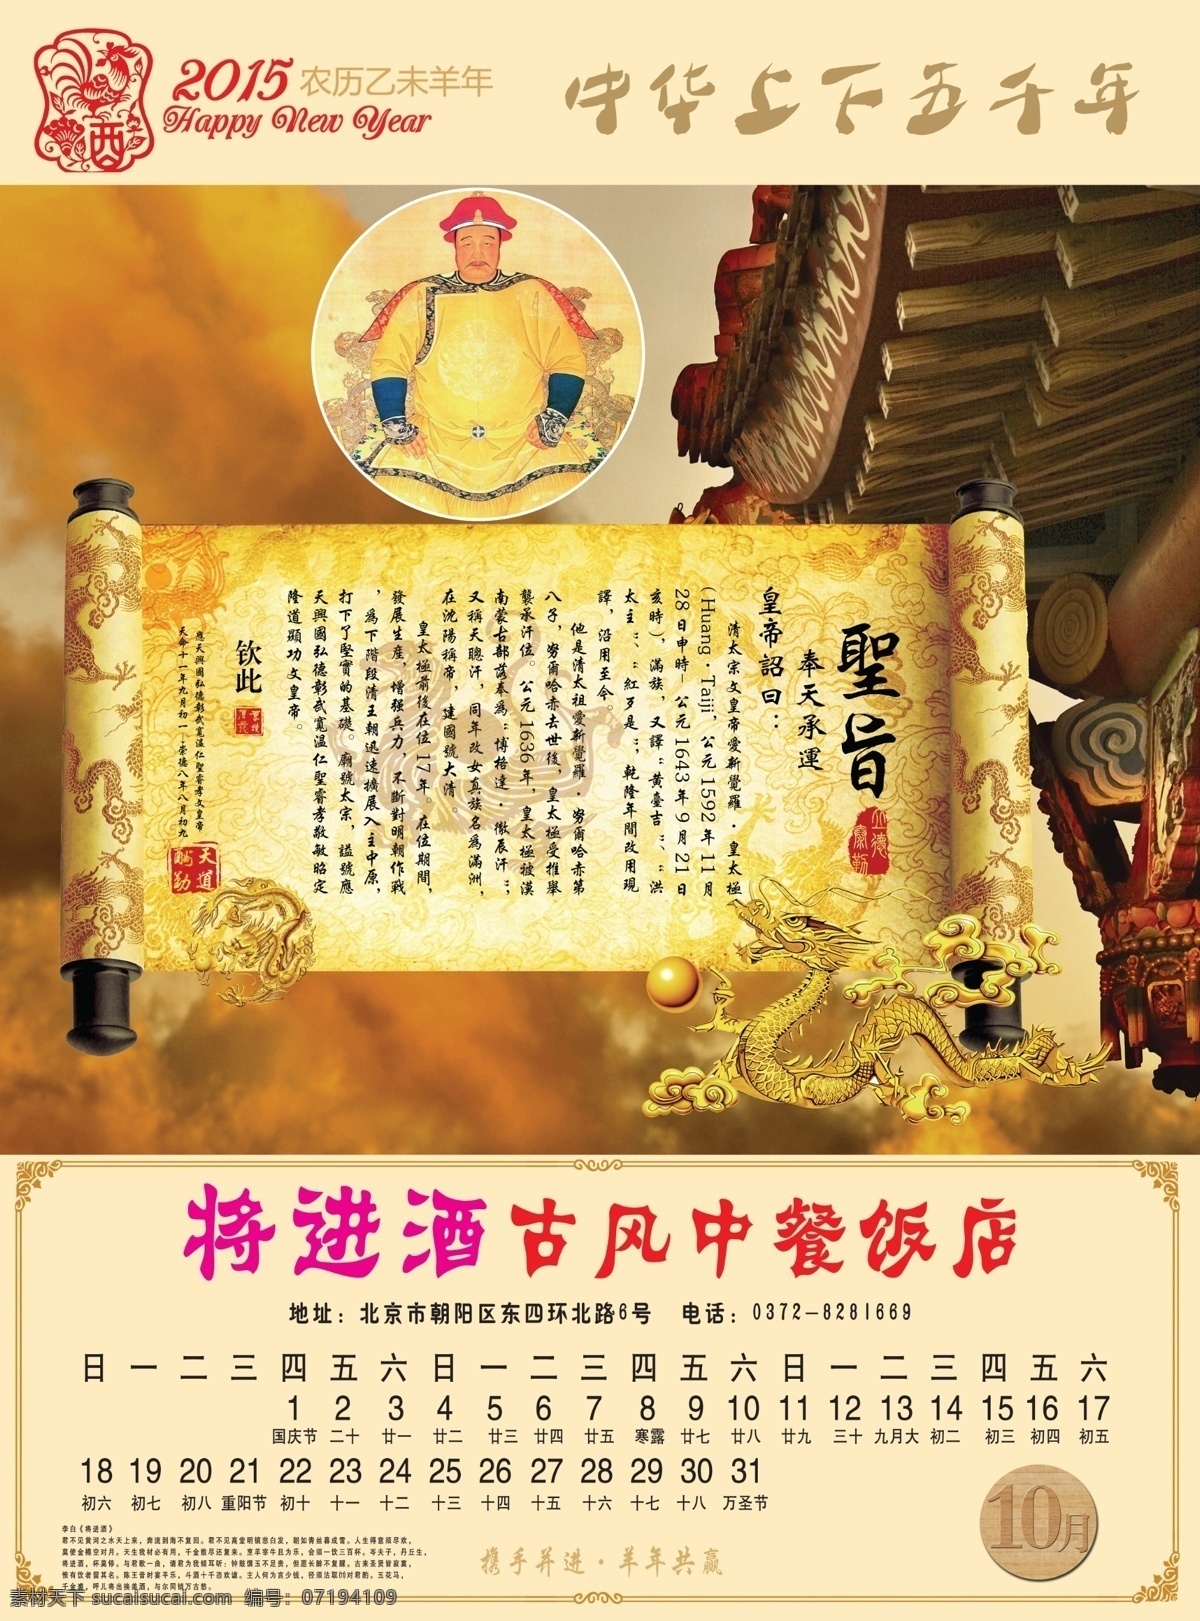 皇太极 日历 帝王 古典背景 皇帝 生肖剪纸 10月皇帝